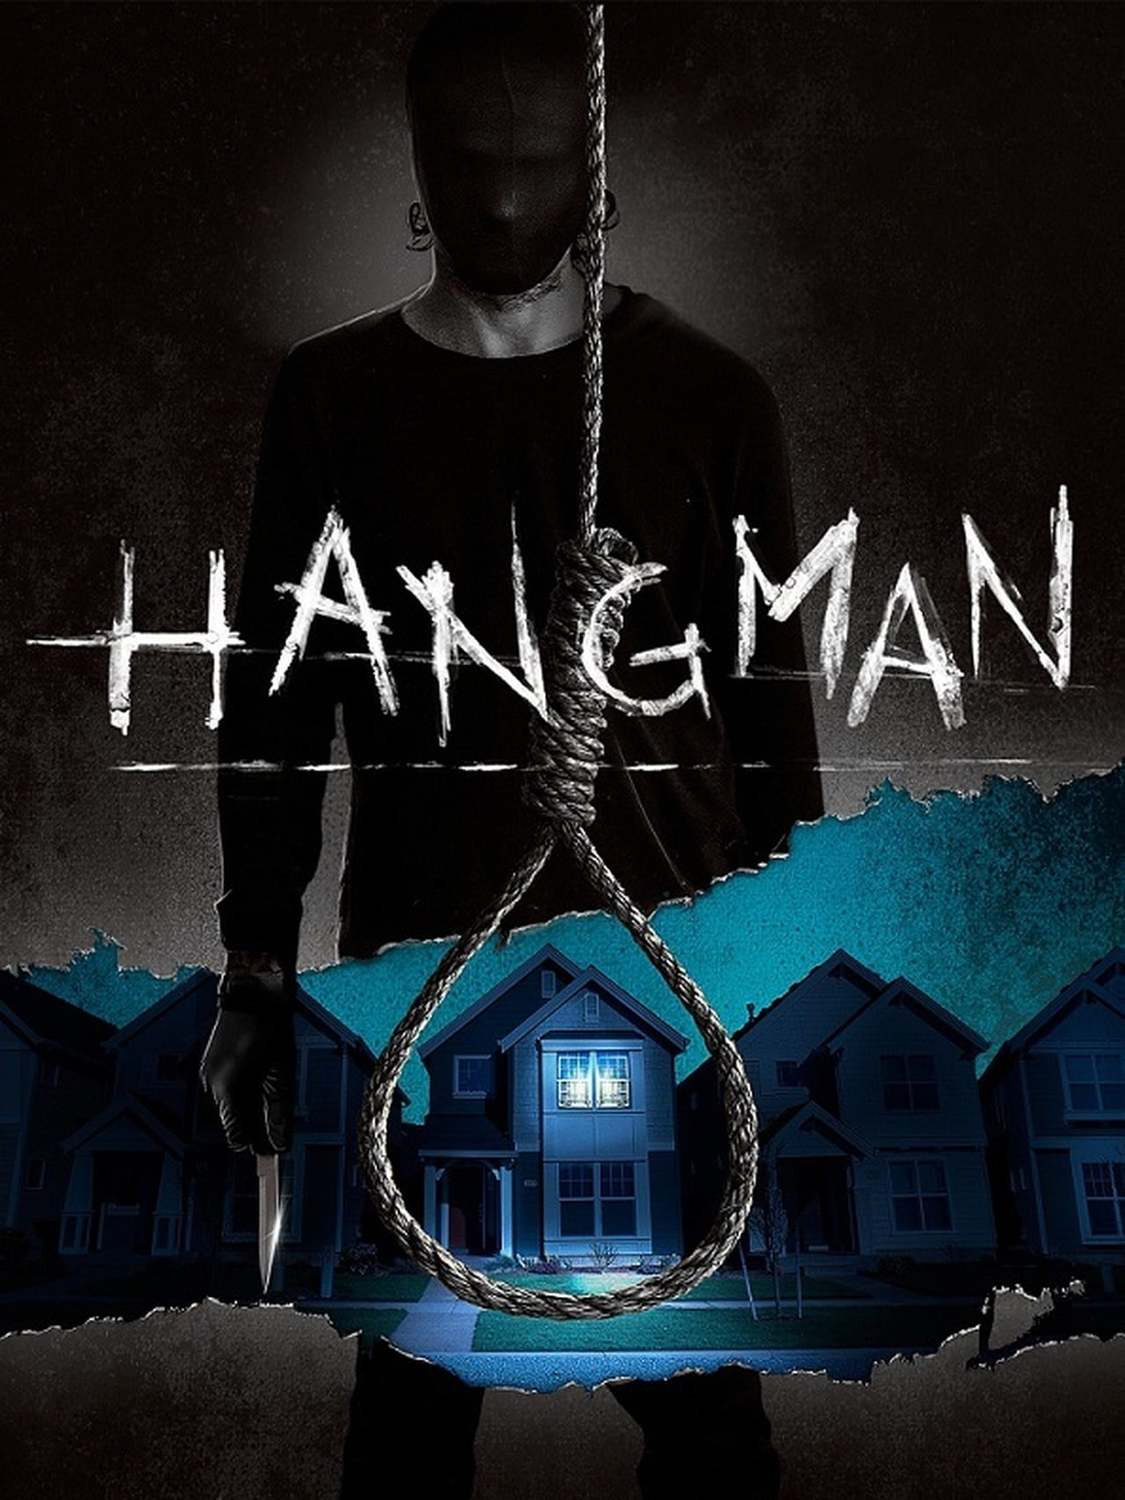 Hangman | Fandíme filmu